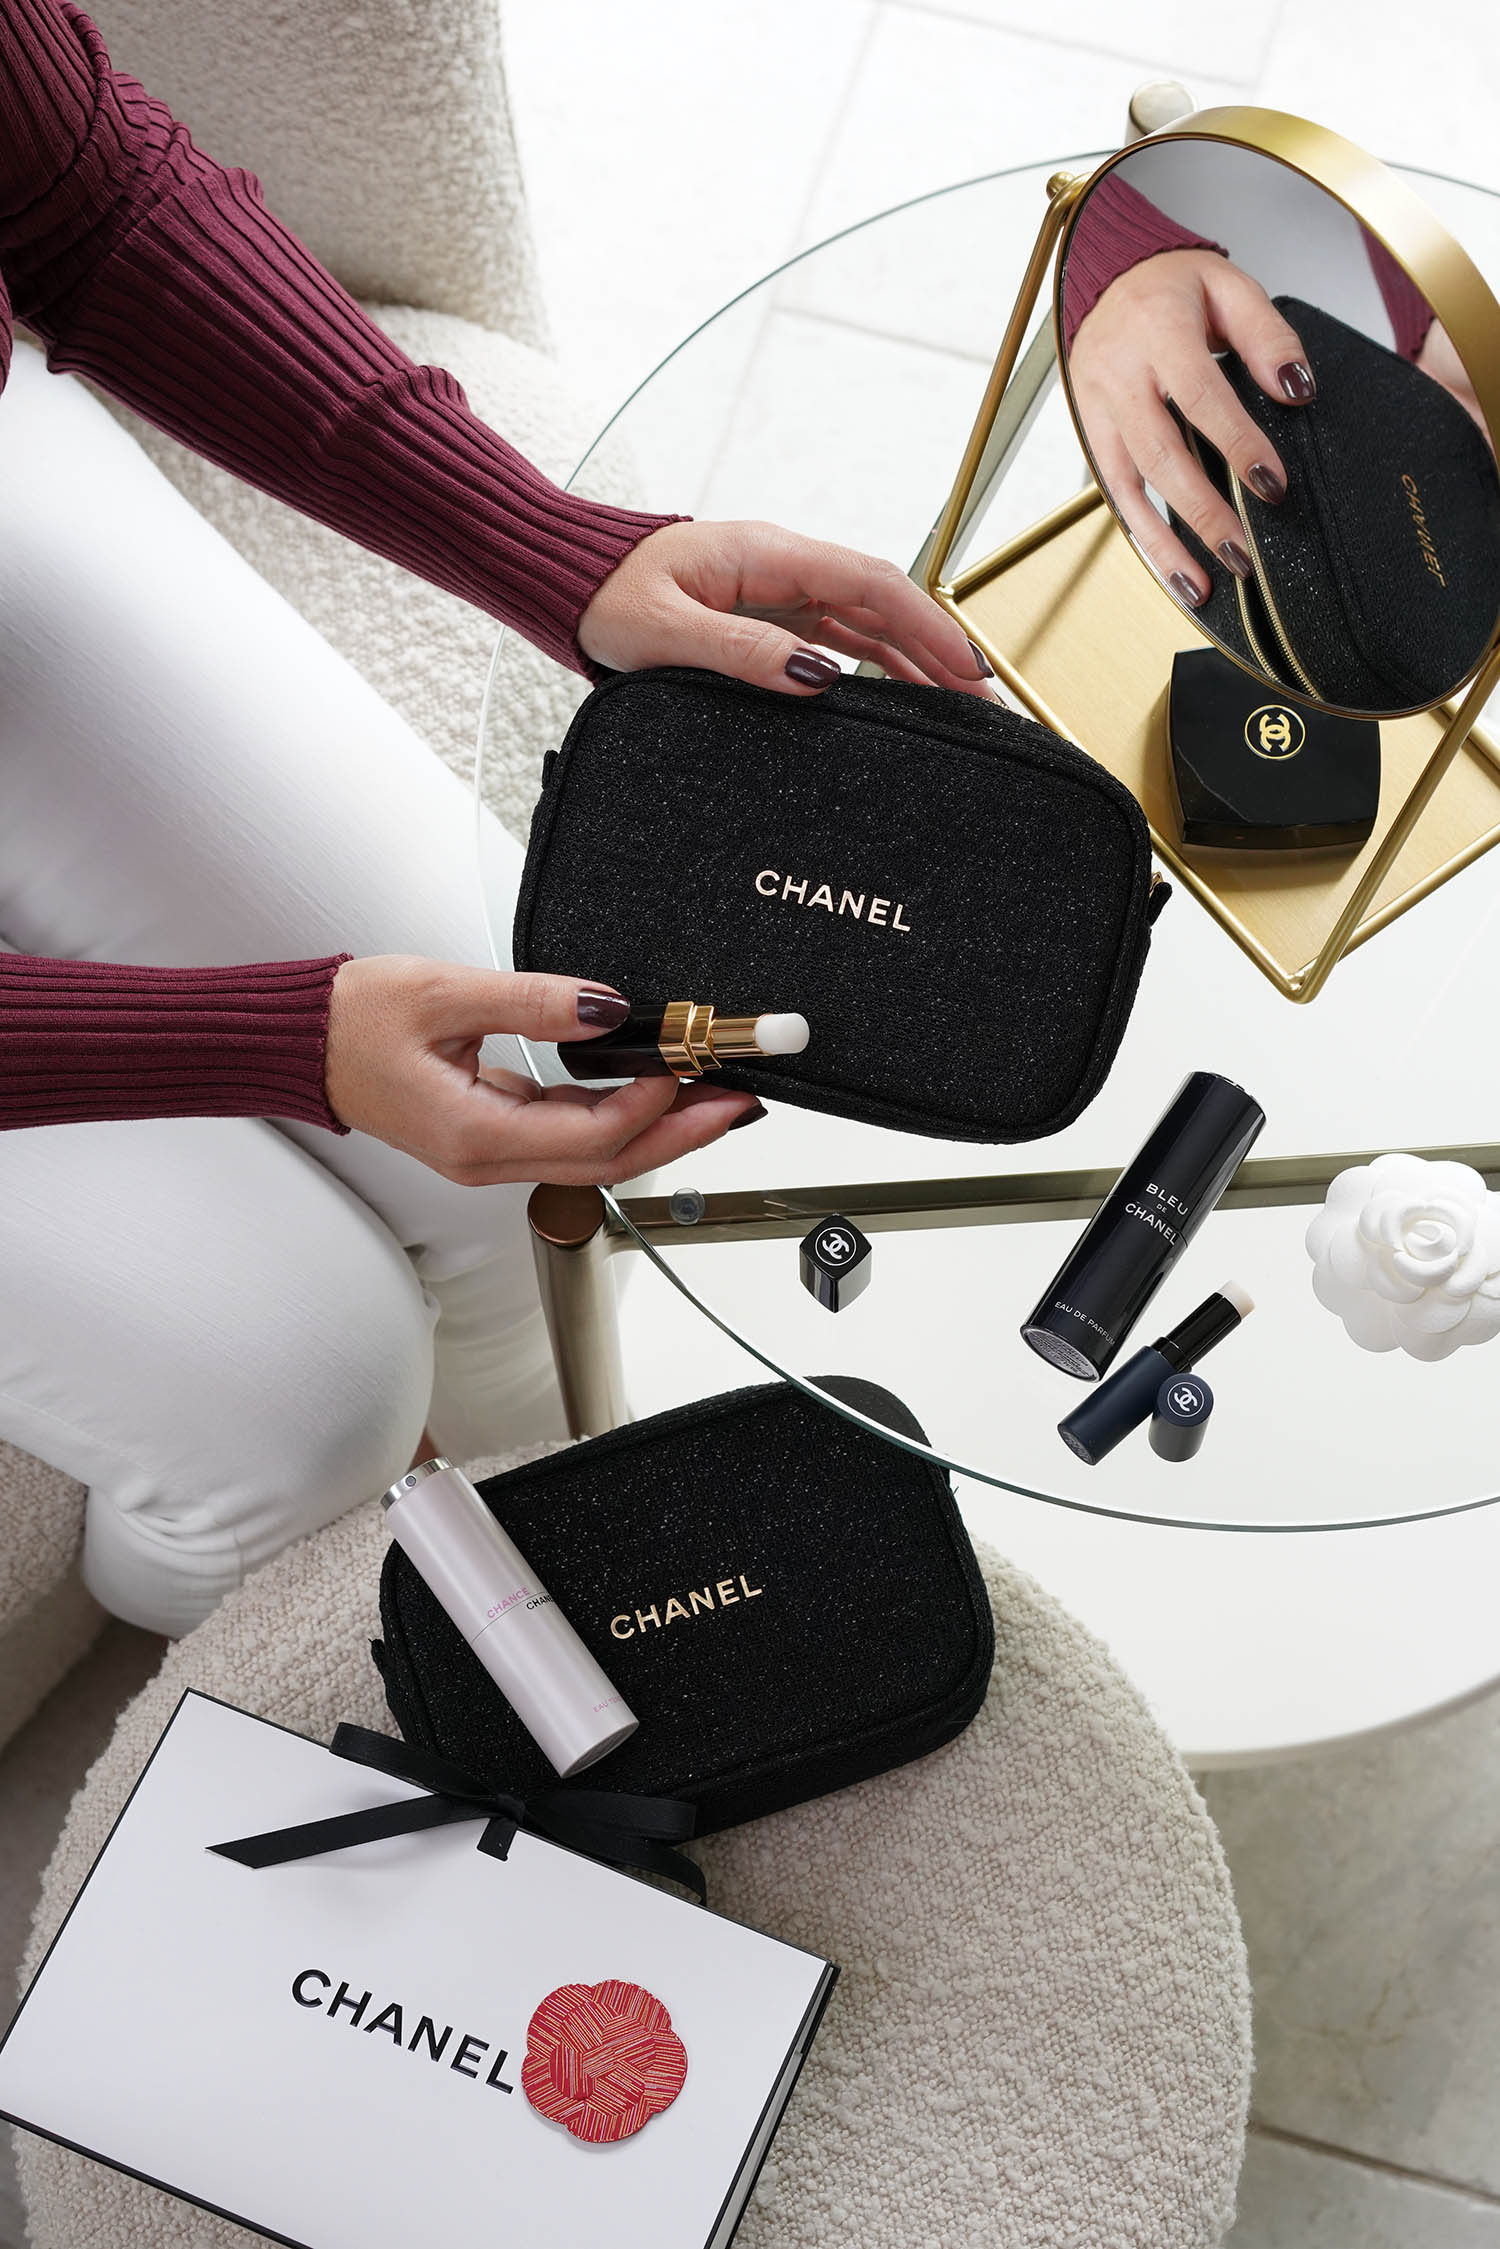 chanel makeup travel kit bag